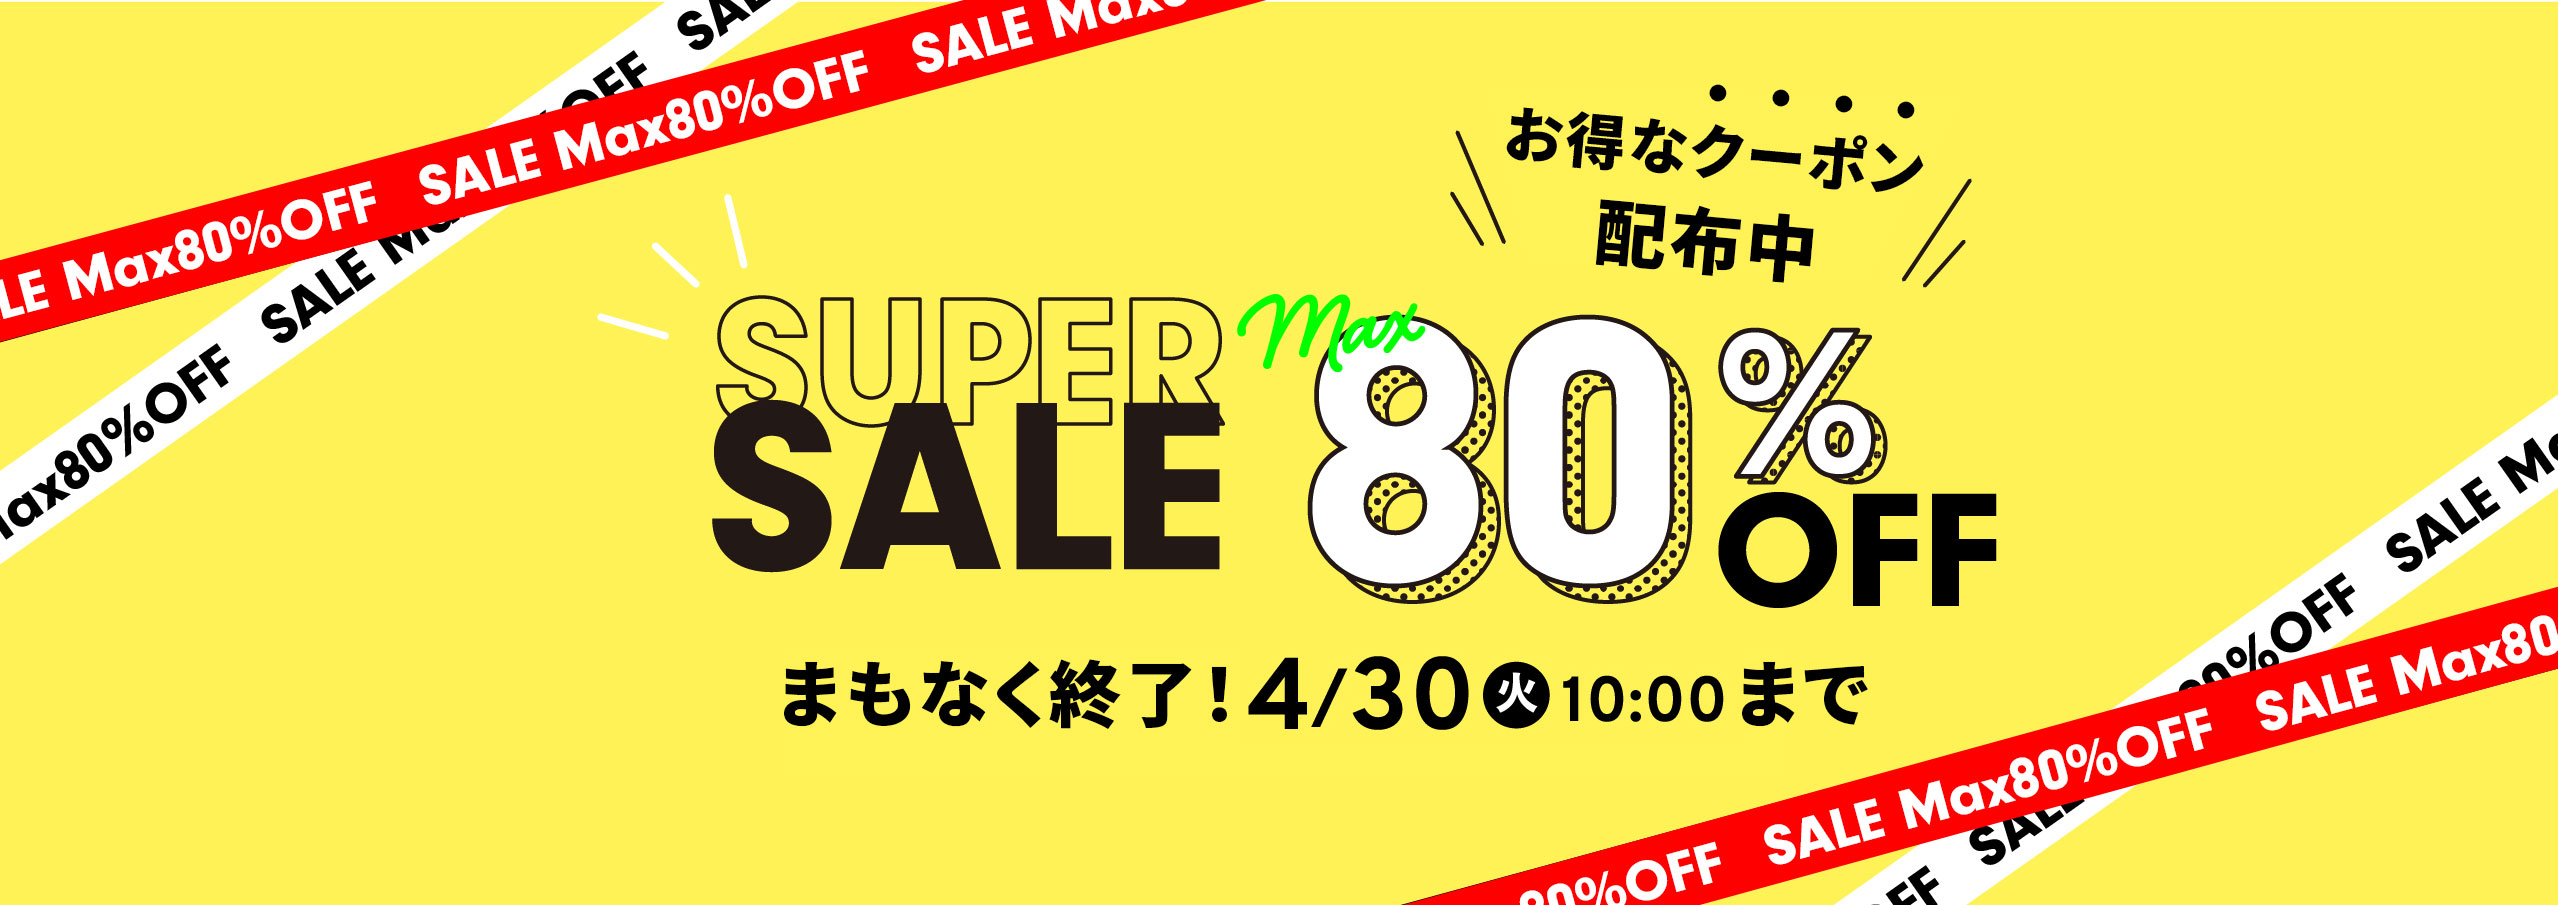 SUPER SALE MAX 80% OFF 4/6 20:00 - 4/30 10:00